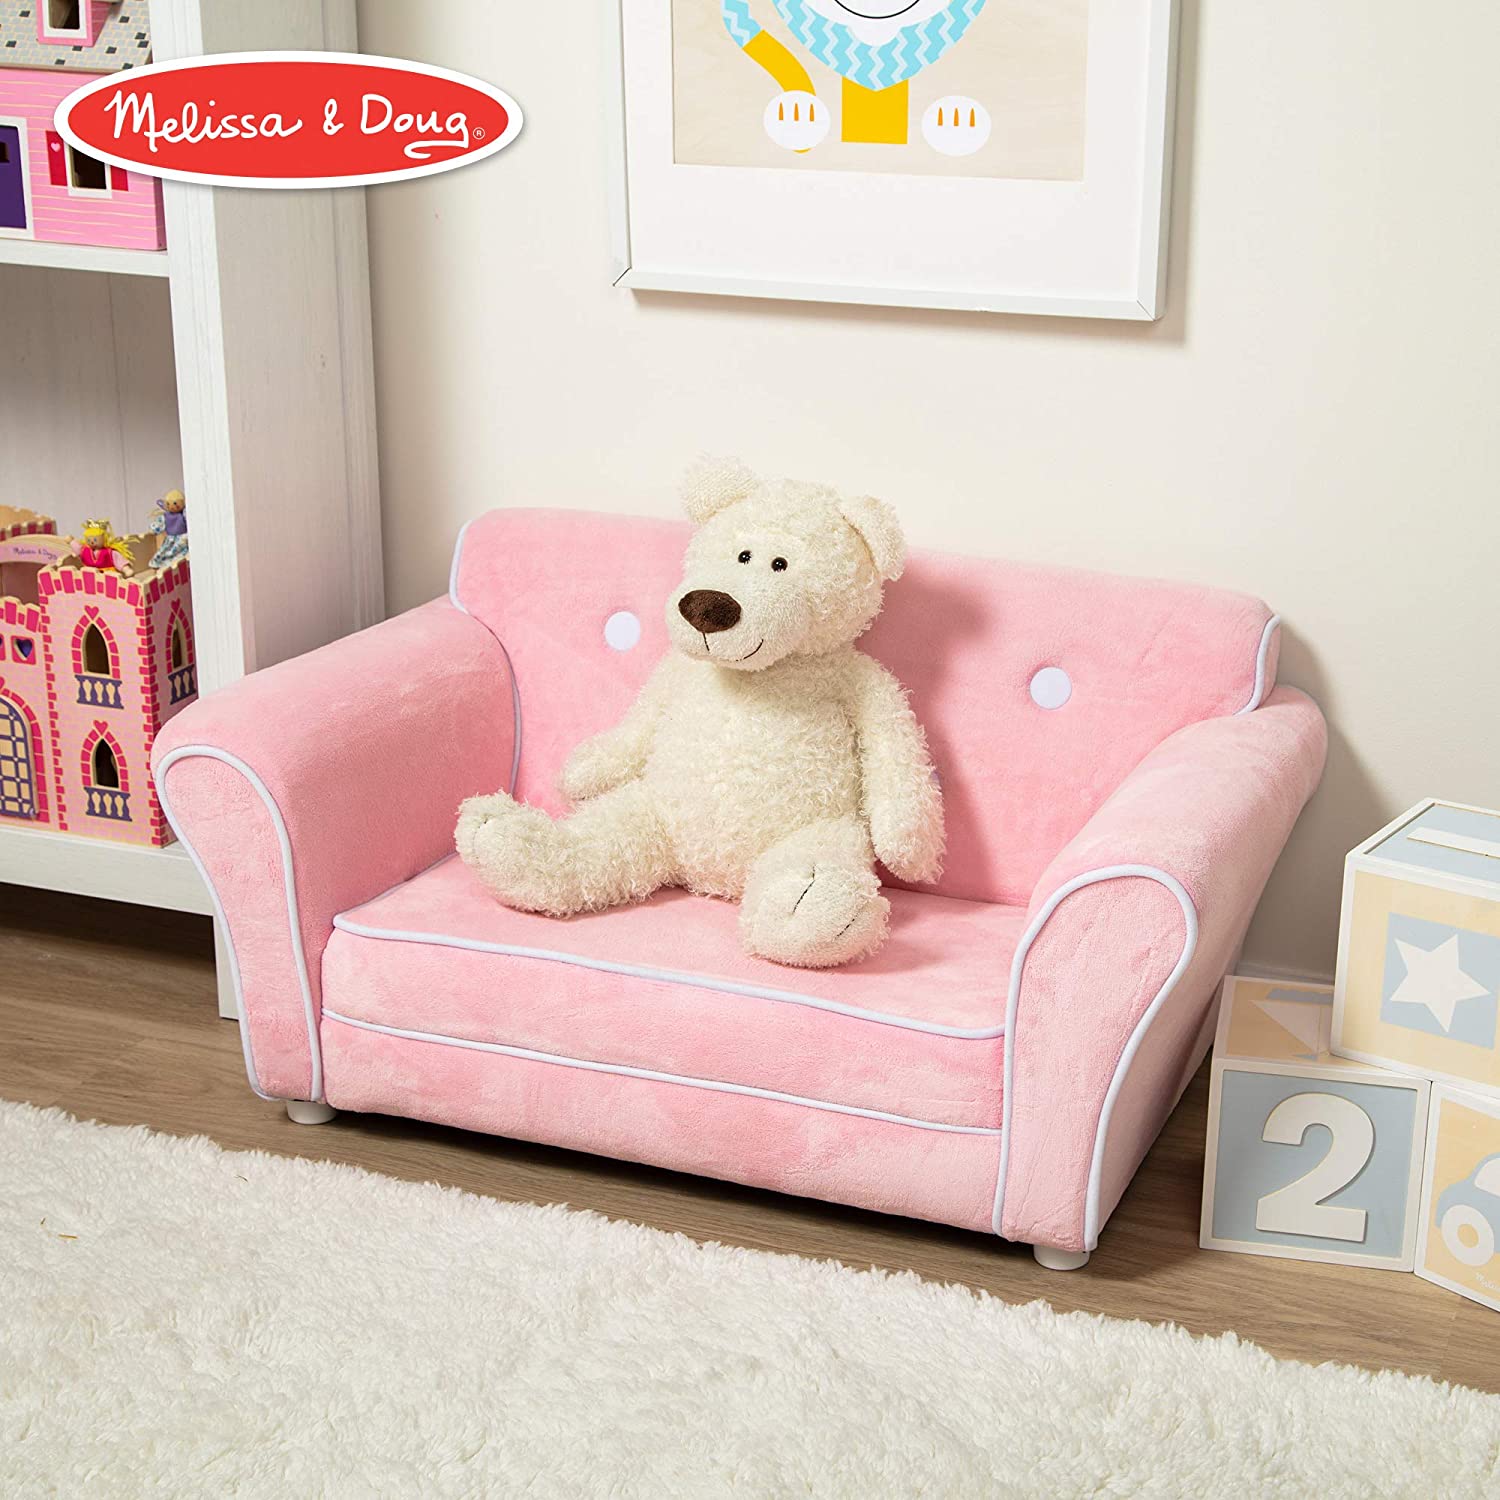 Melissa & Doug Child's Sofa - Pink Plush Children's Furniture